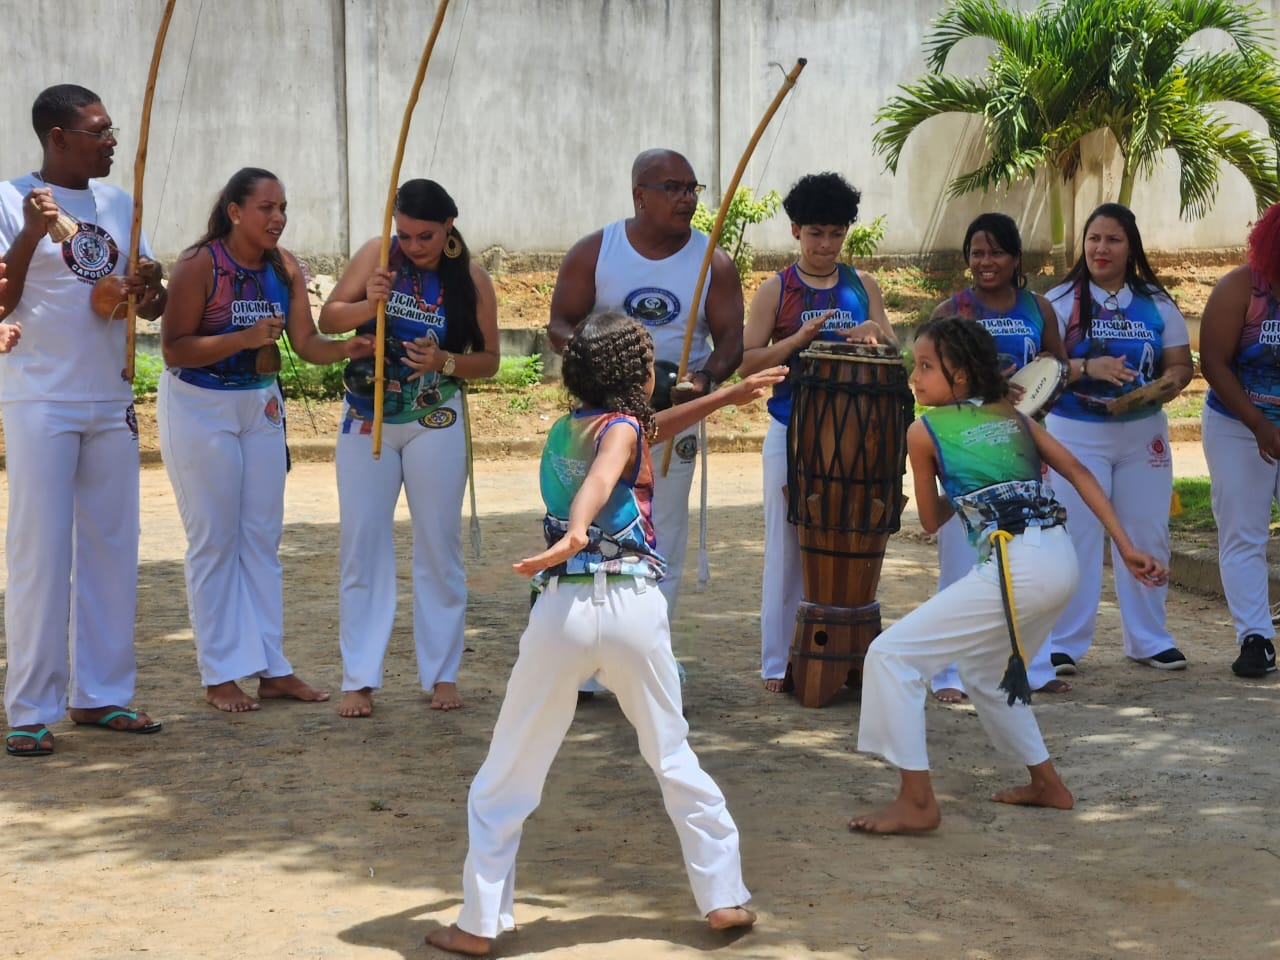 “Festival feminino: roda de capoeira também tem mulher”, ocorreu no Campus Sertão